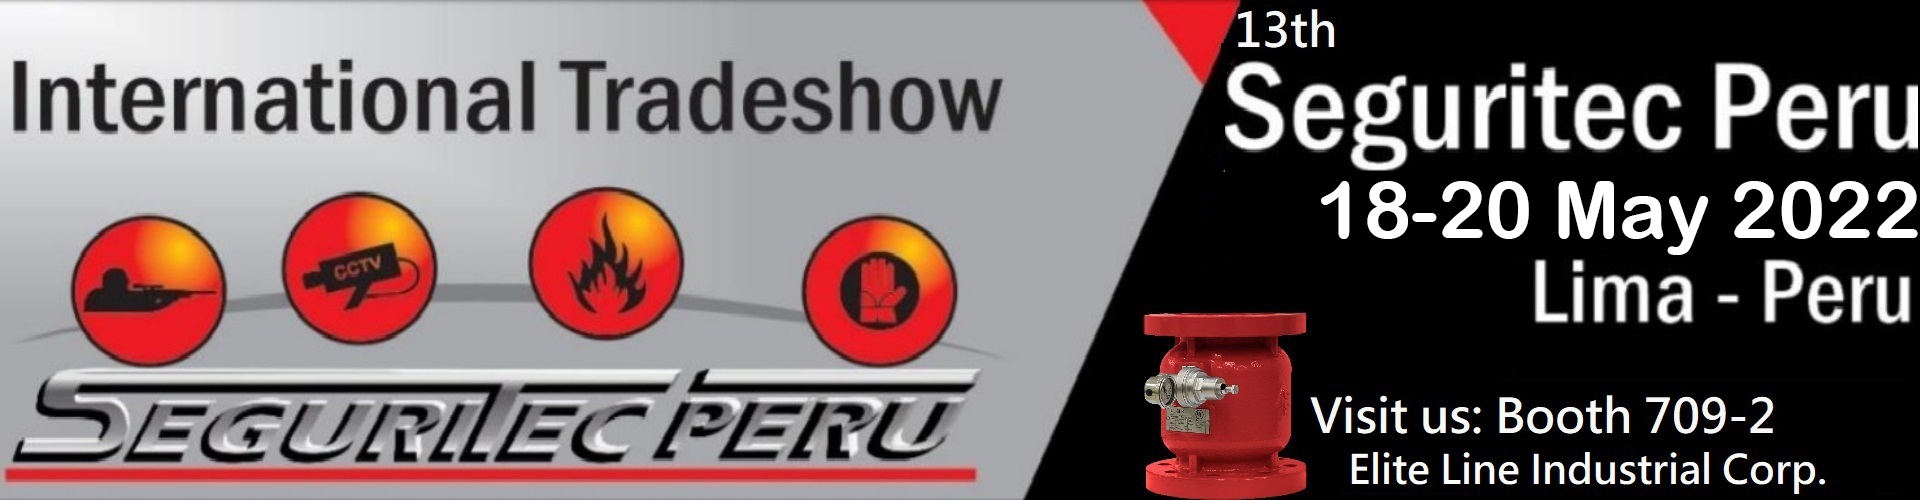 Seguritec Peru 2022